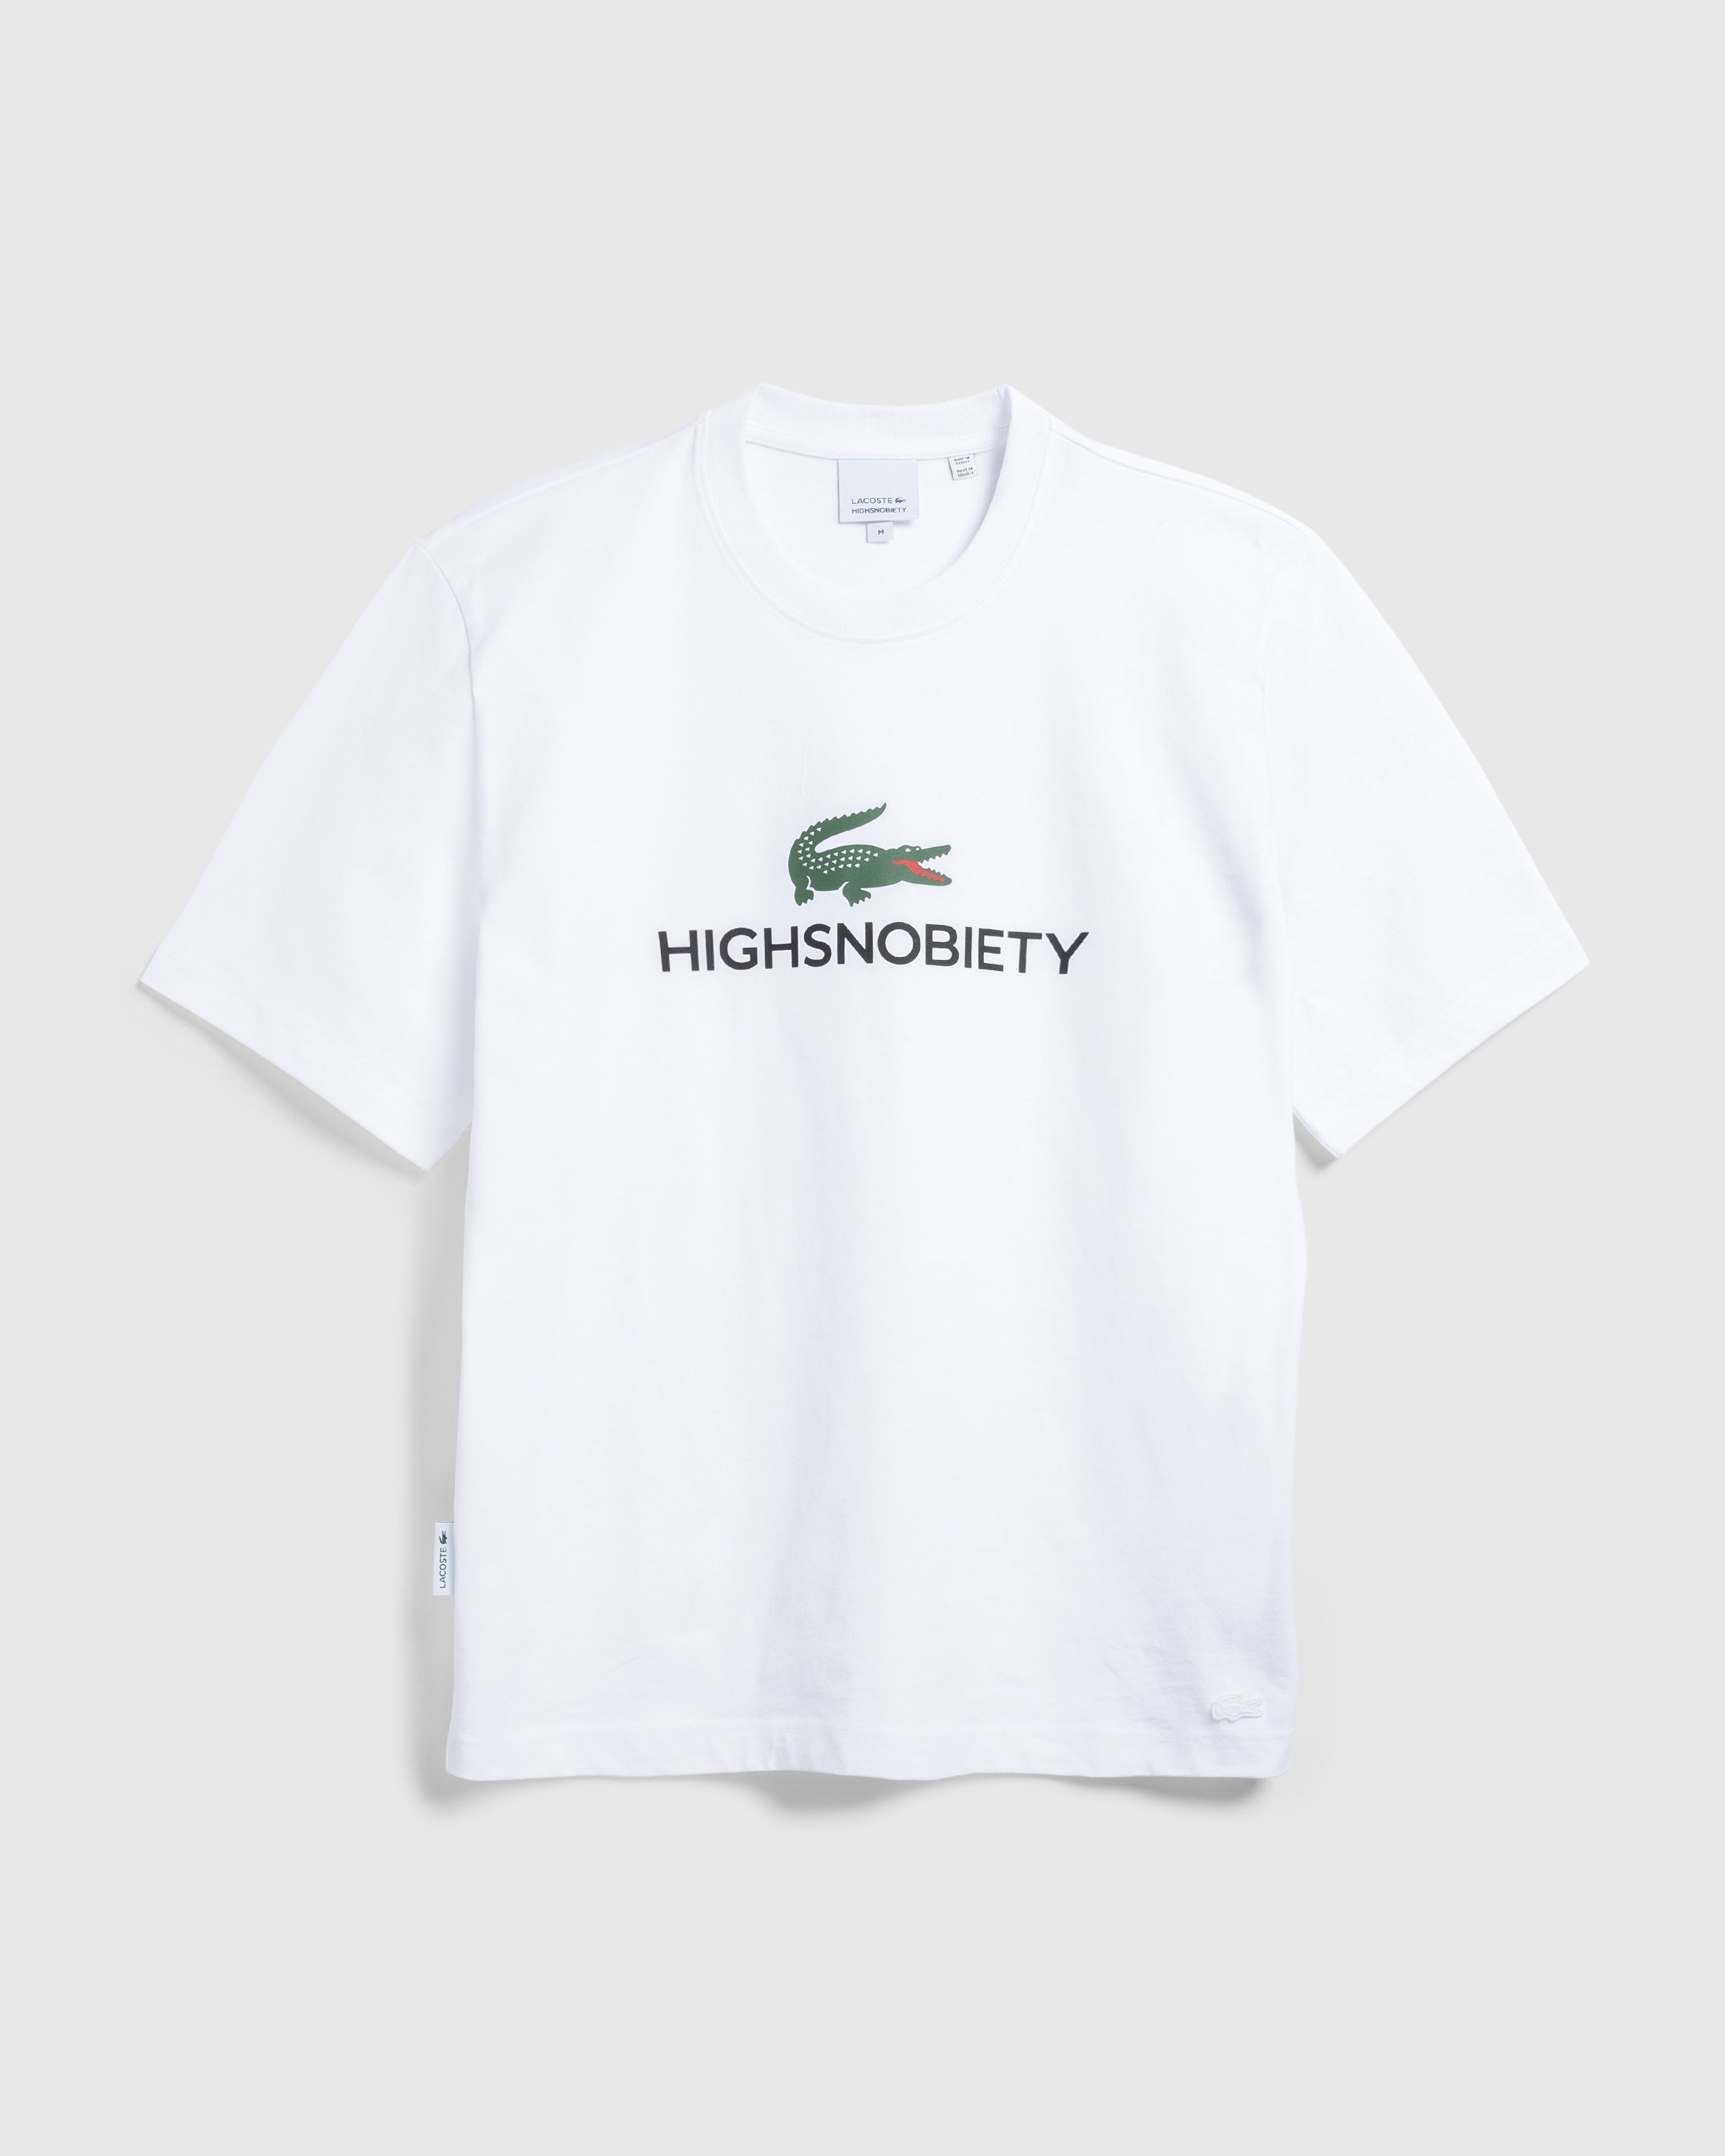 Lacoste x Highsnobiety - White T-Shirt - Clothing - White - Image 1